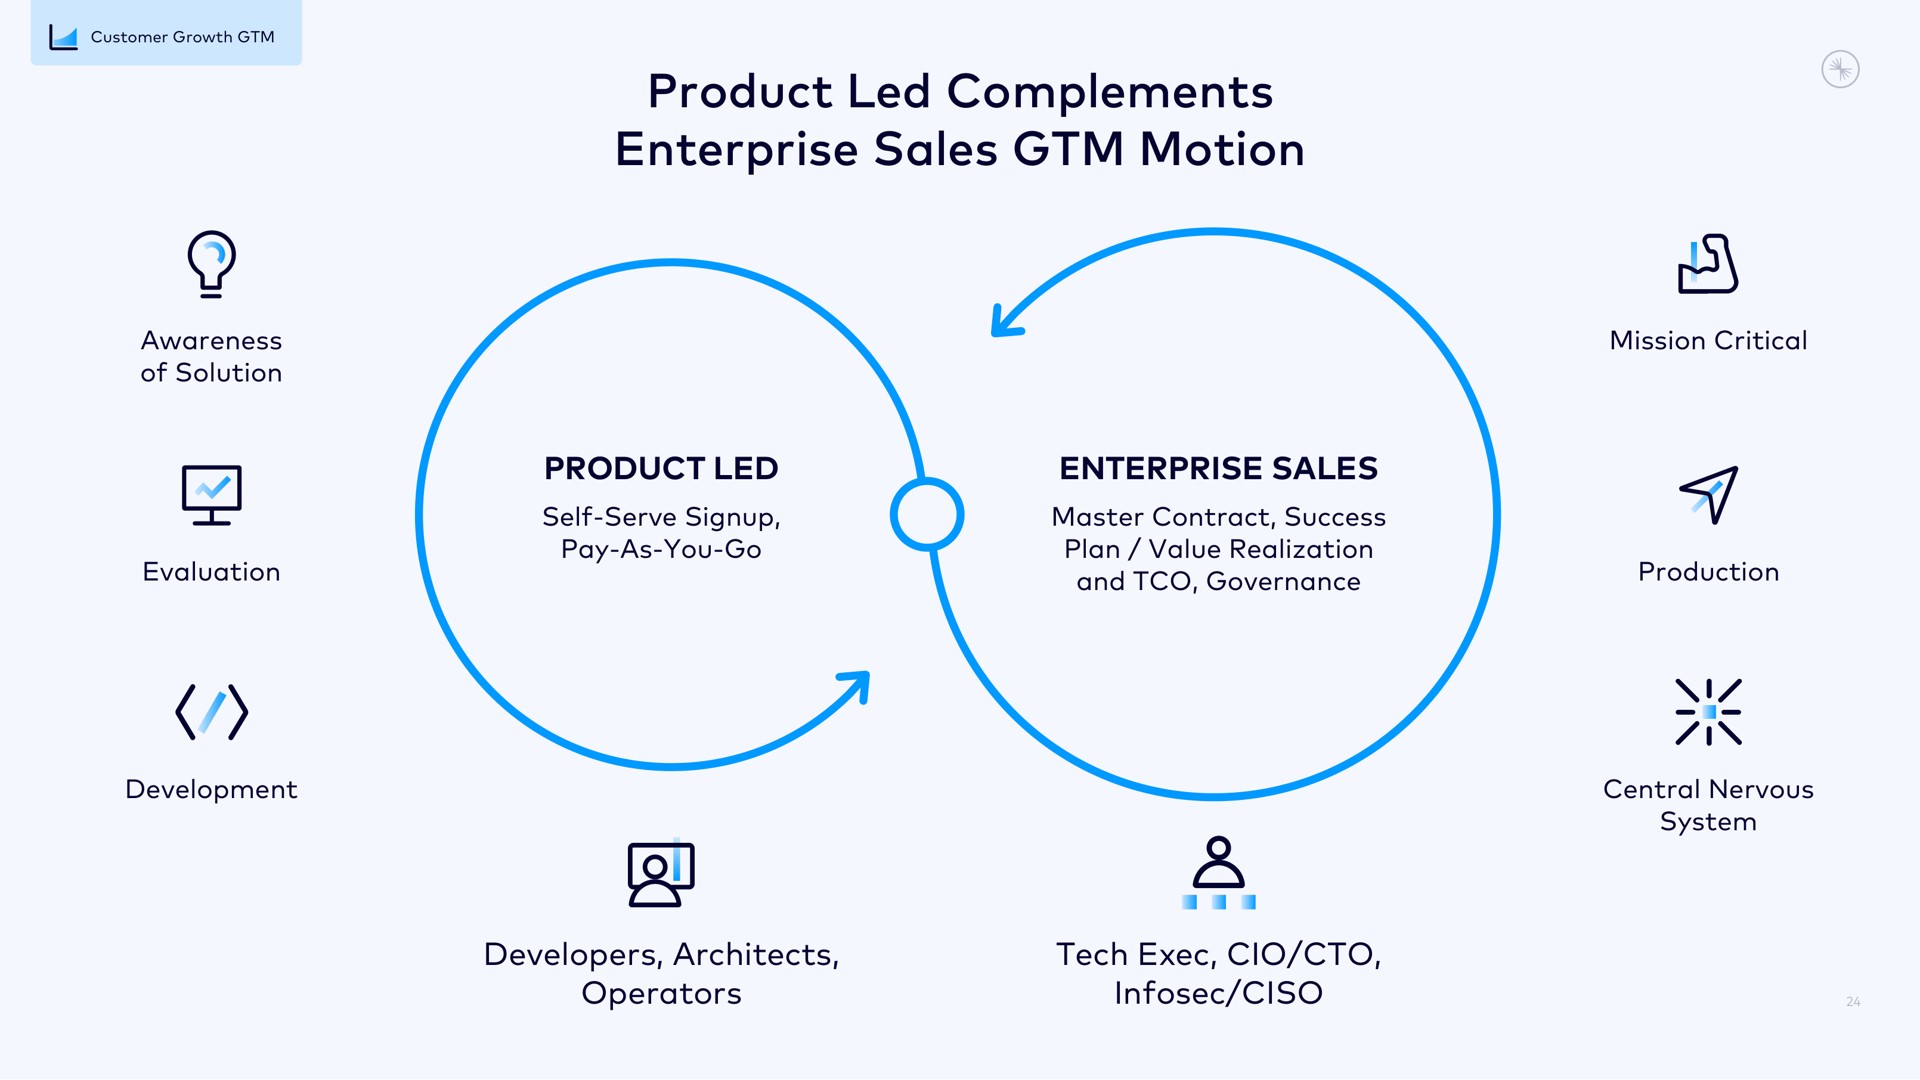 product led complements enterprise sales motion | Confluent